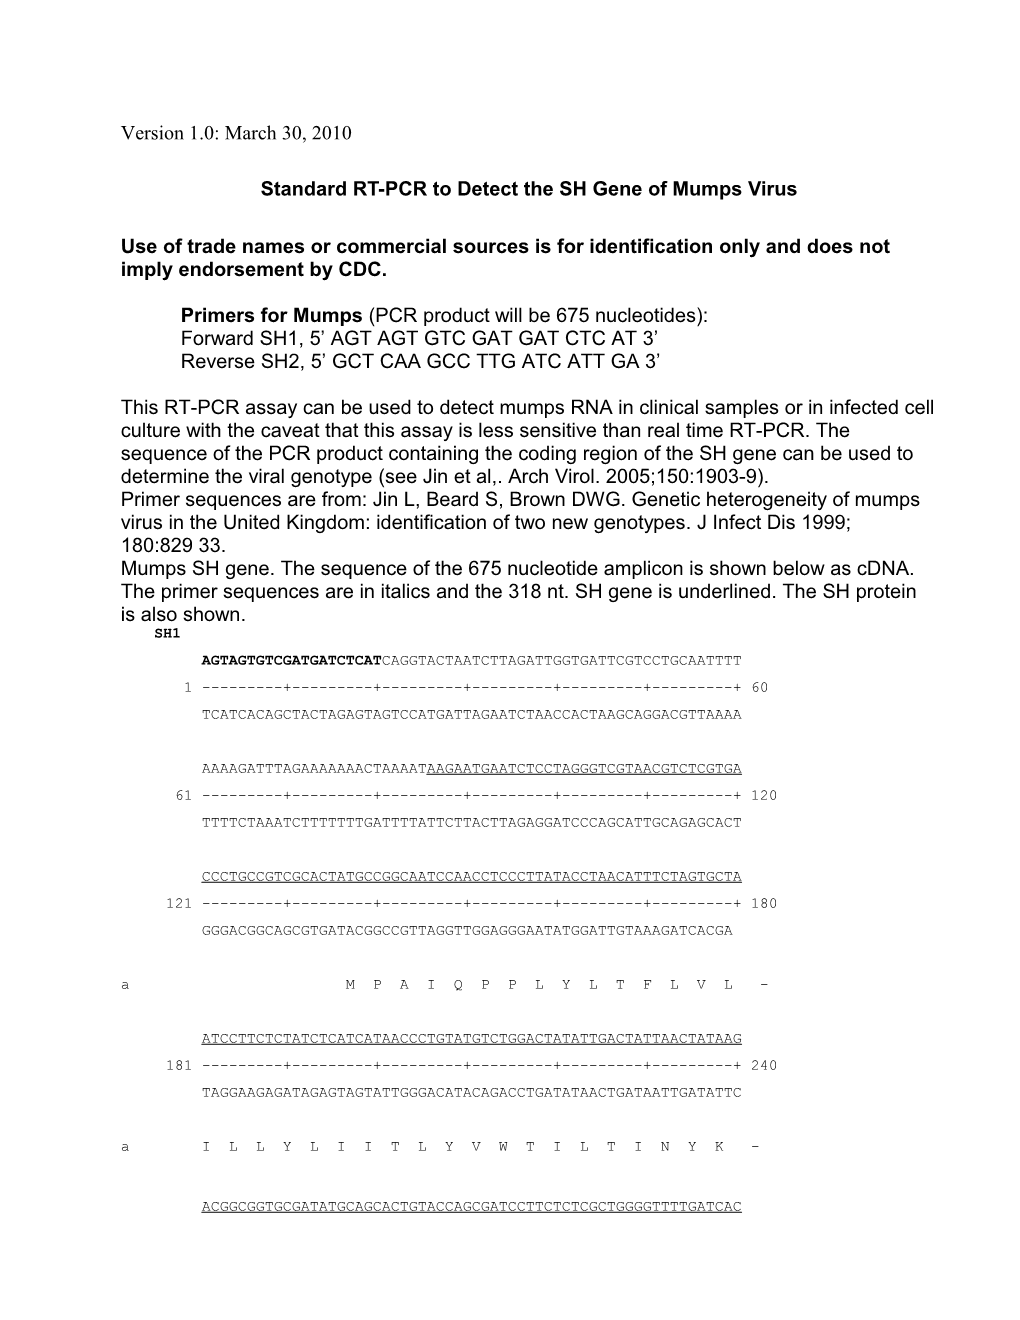 MUMPS Virus Standard RT-PCR Overview